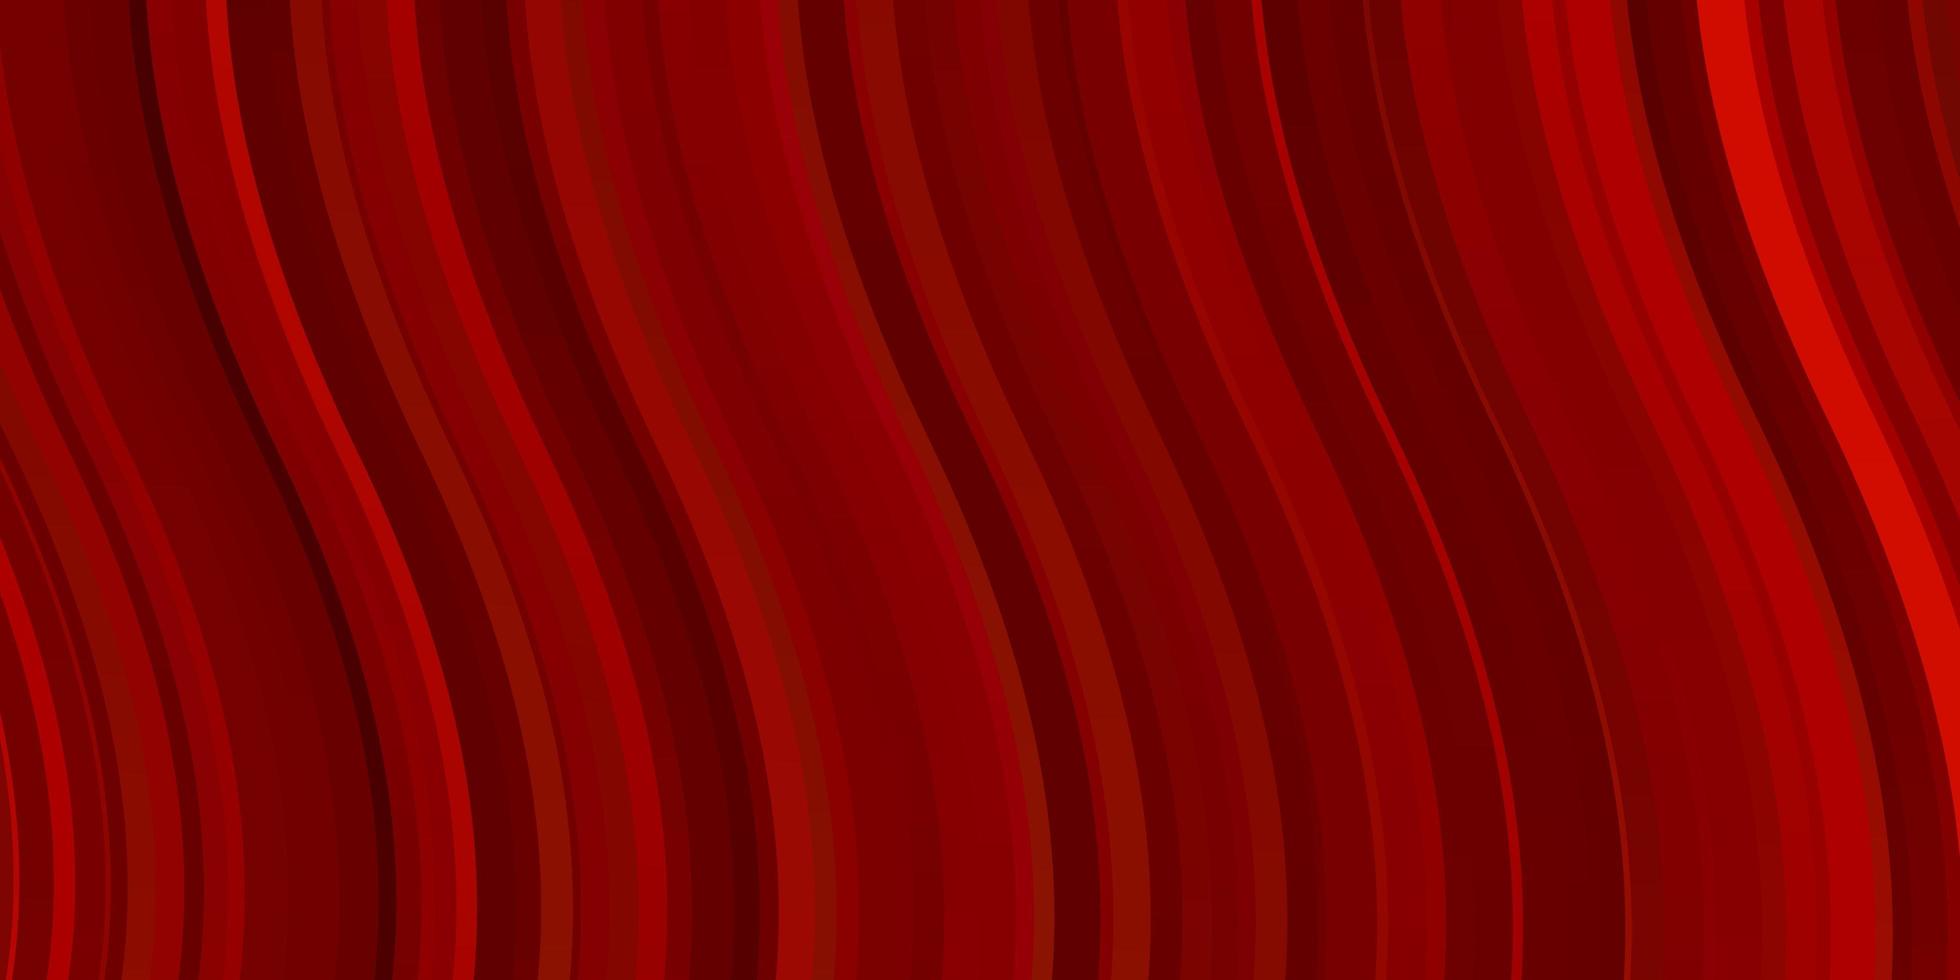 Telón de fondo de vector rojo claro con curvas. muestra brillante con formas y líneas curvas de colores. patrón para comerciales, anuncios.